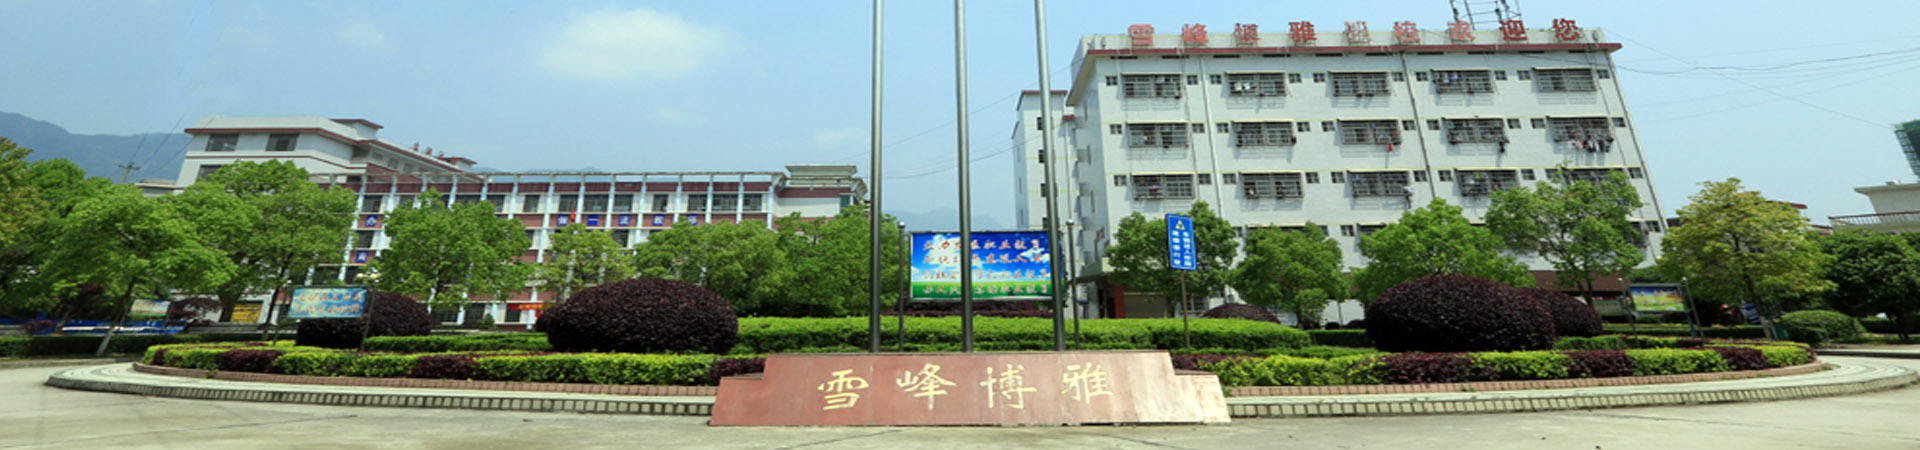 邵阳市雪峰博雅职业技术学校